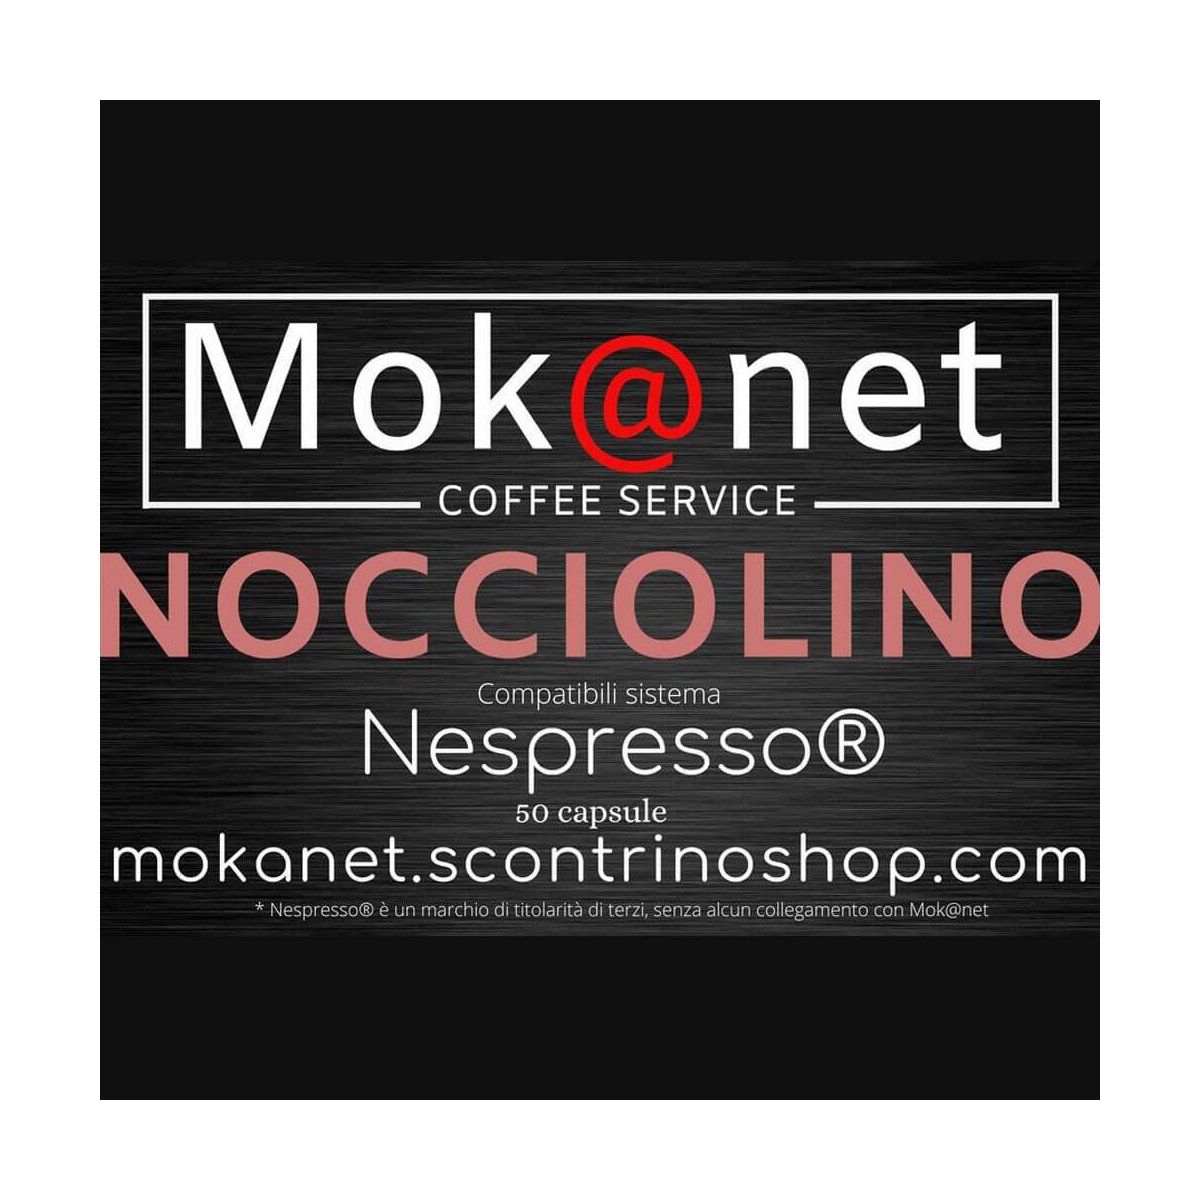 100 CAPSULE COMPATIBILI Nespresso MOK@NET "NOCCIOLINO"